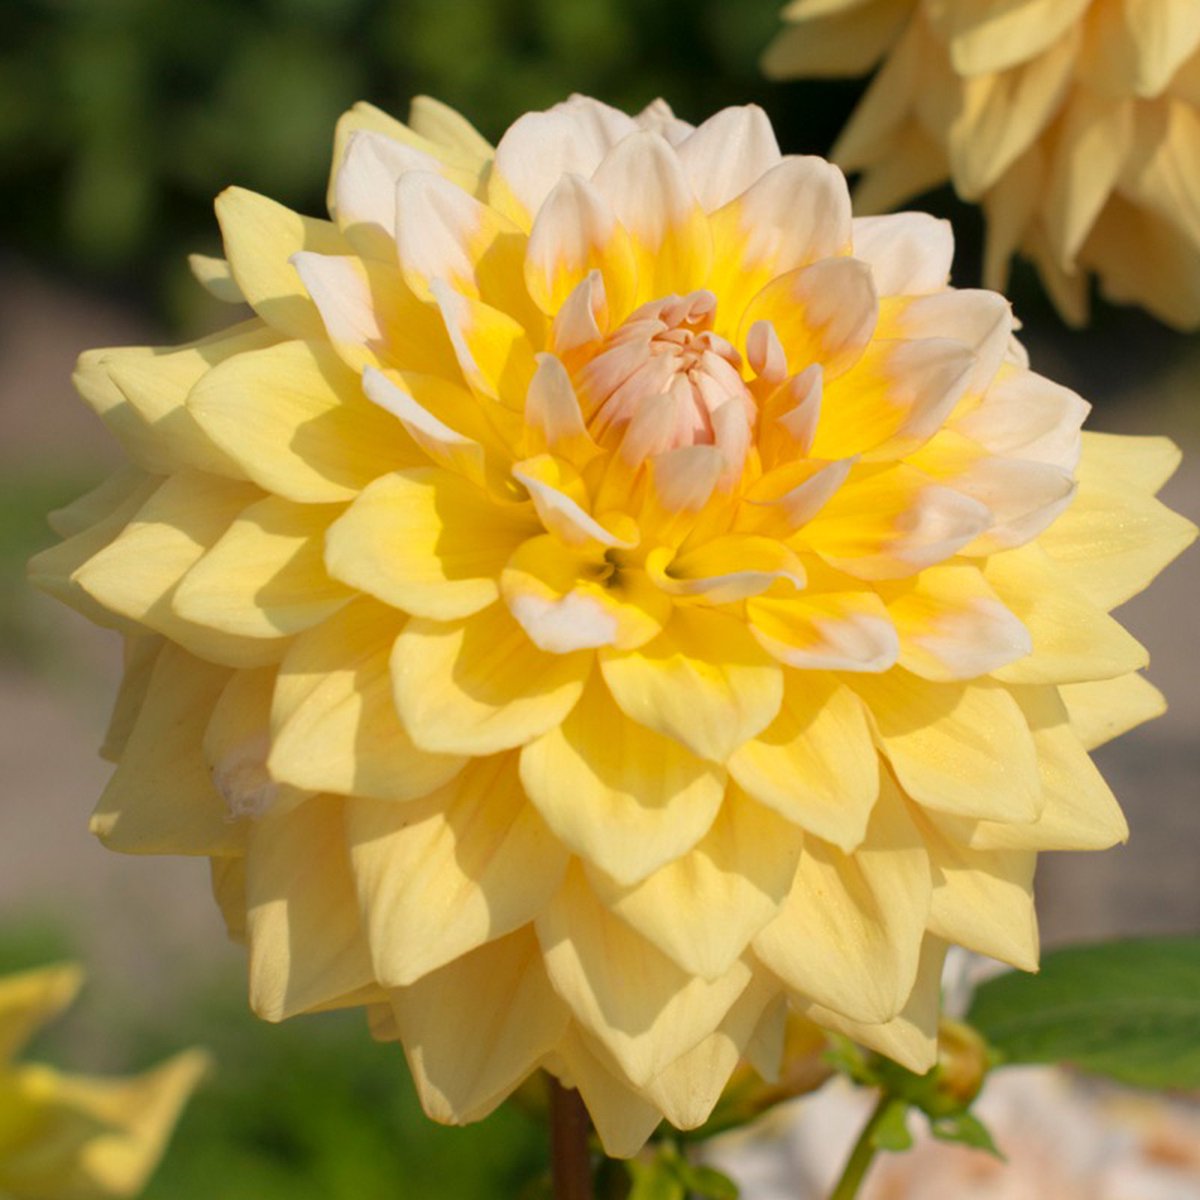 Dahlia Seattle | 3 stuks | Decoratieve Dahlia | Knol | Geel | Wit | Dahlia Knollen van Top Kwaliteit | 100% Bloeigarantie | QFB Gardening